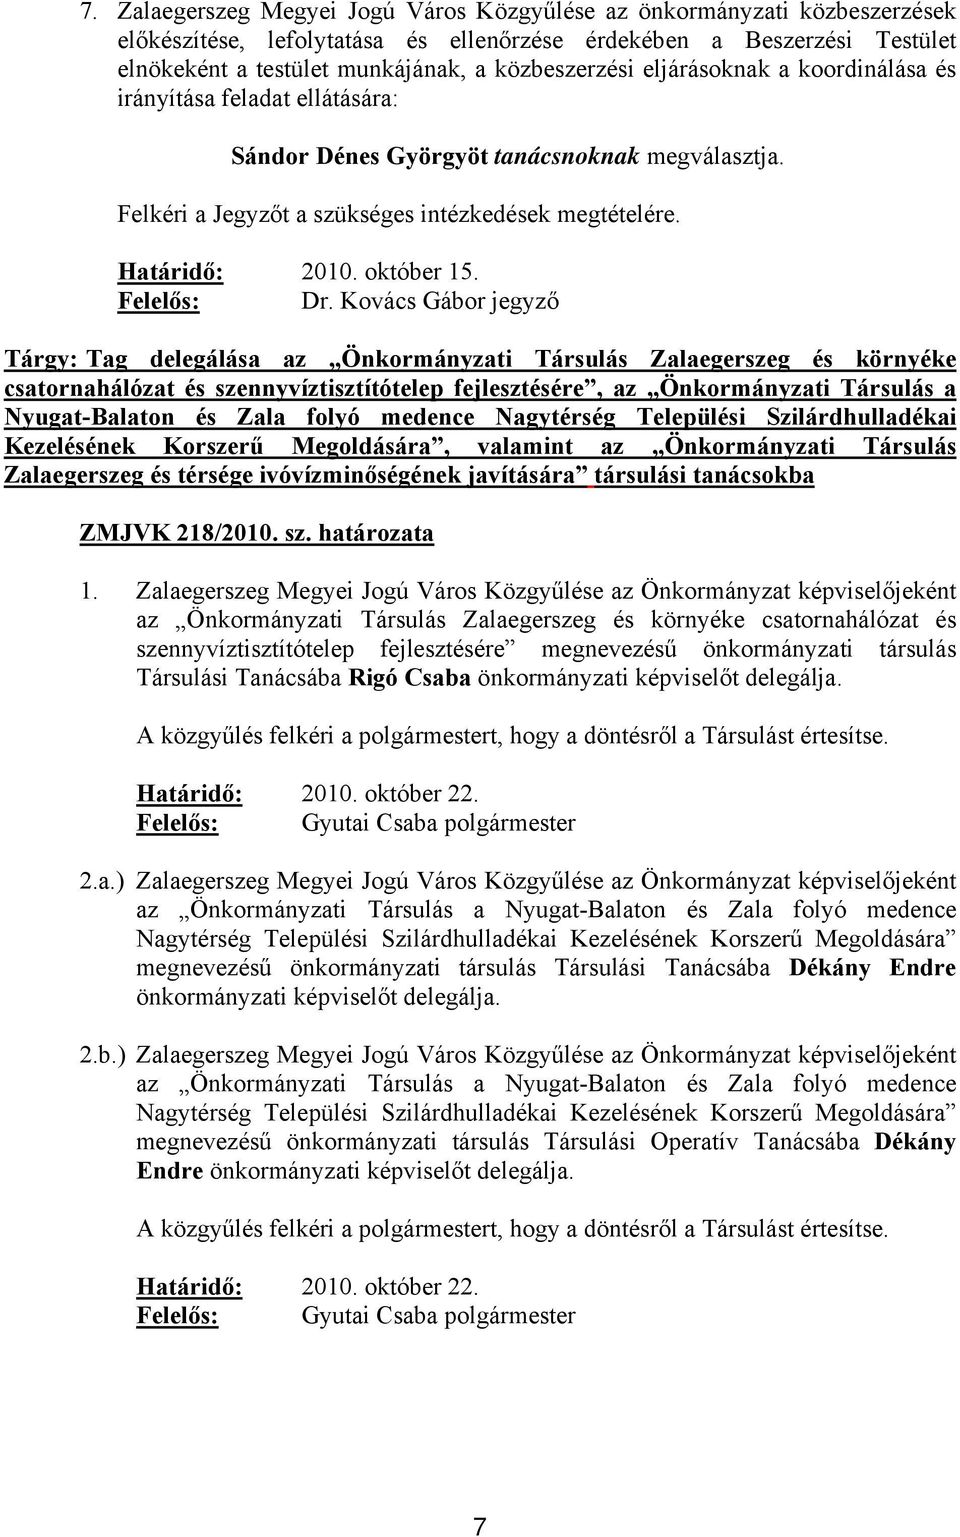 Tárgy: Tag delegálása az Önkormányzati Társulás Zalaegerszeg és környéke csatornahálózat és szennyvíztisztítótelep fejlesztésére, az Önkormányzati Társulás a Nyugat-Balaton és Zala folyó medence